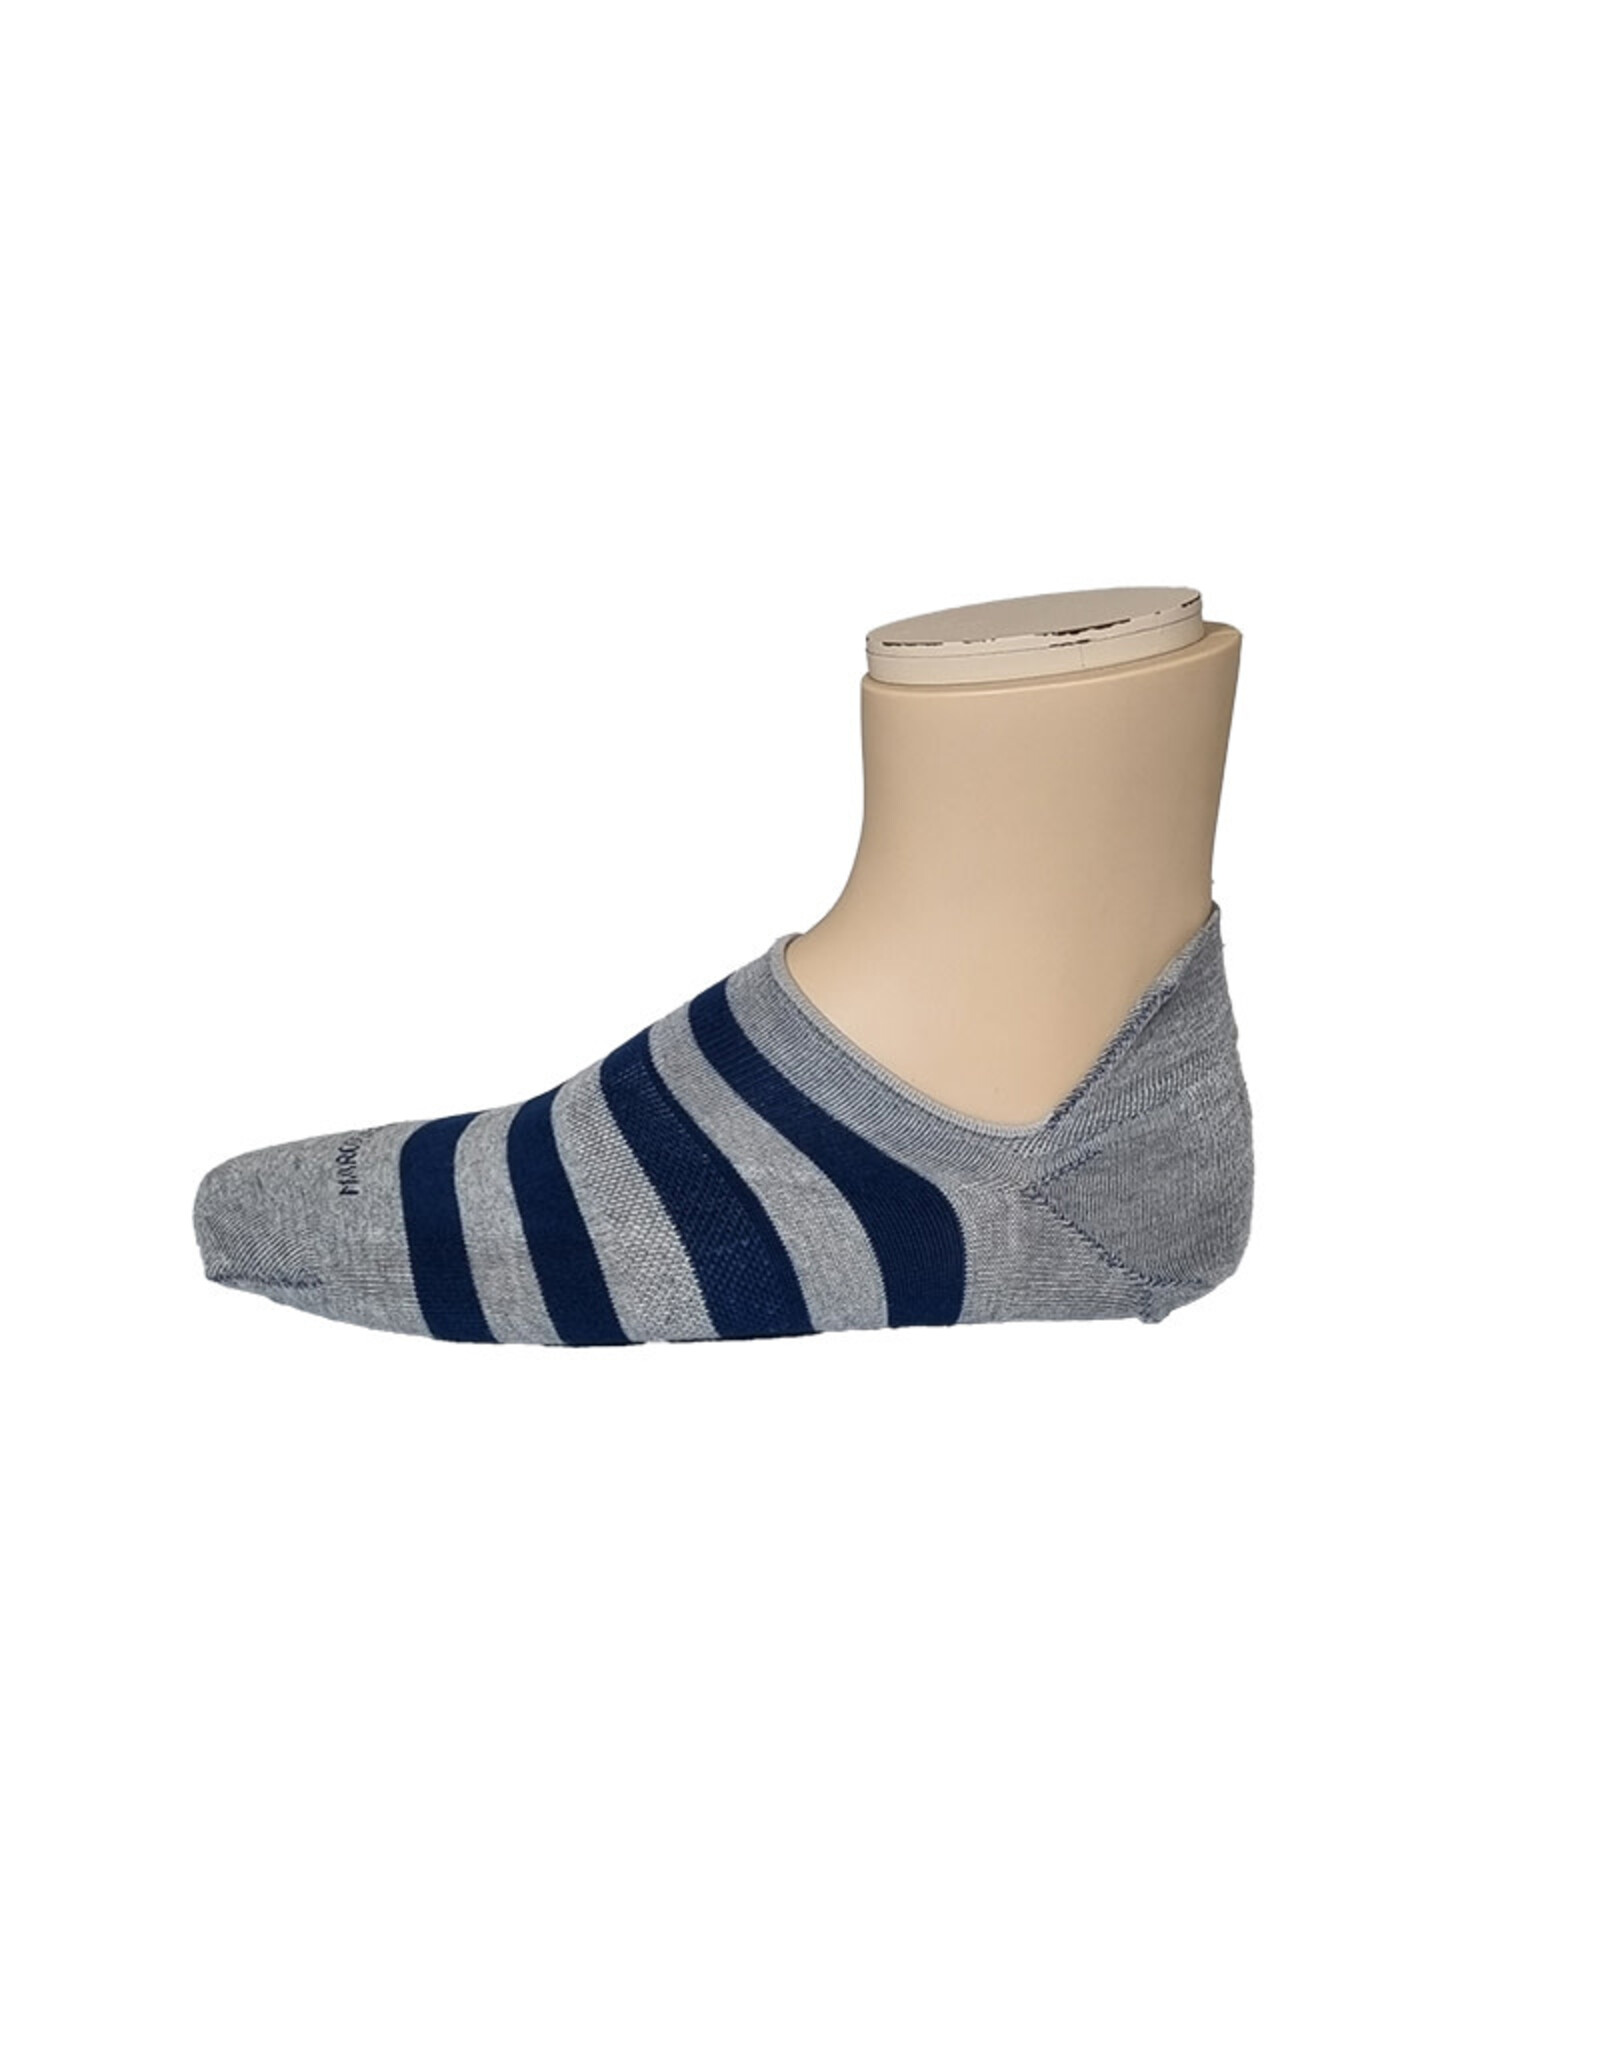 Marcoliani Marcoliani sokken grijs-blauw stripe sneaker 4641K/303